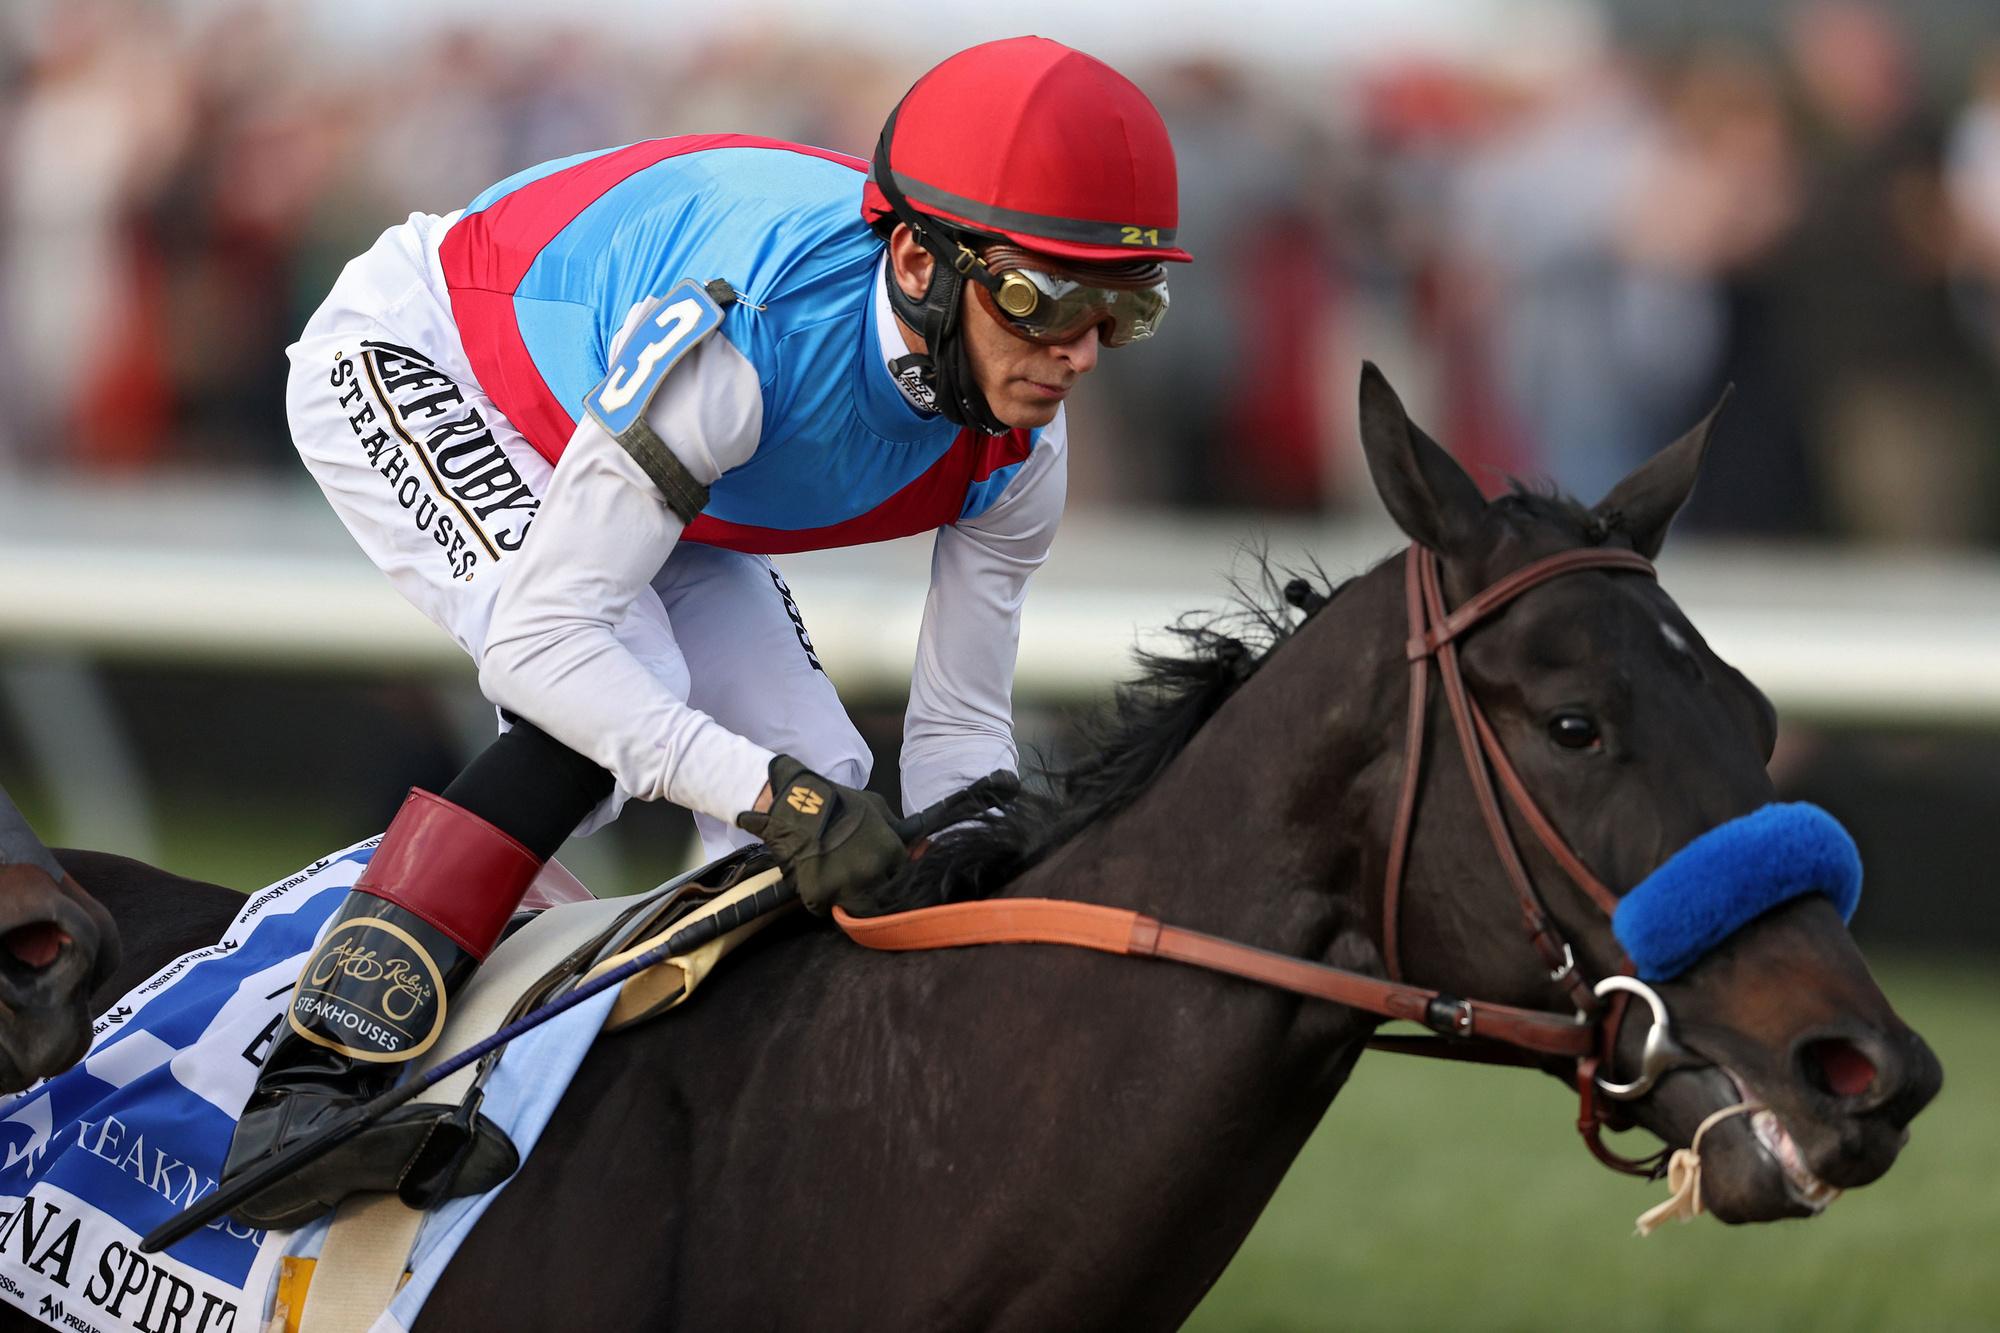 Paard gestorven dat in mei Kentucky Derby won onderzoek naar doping